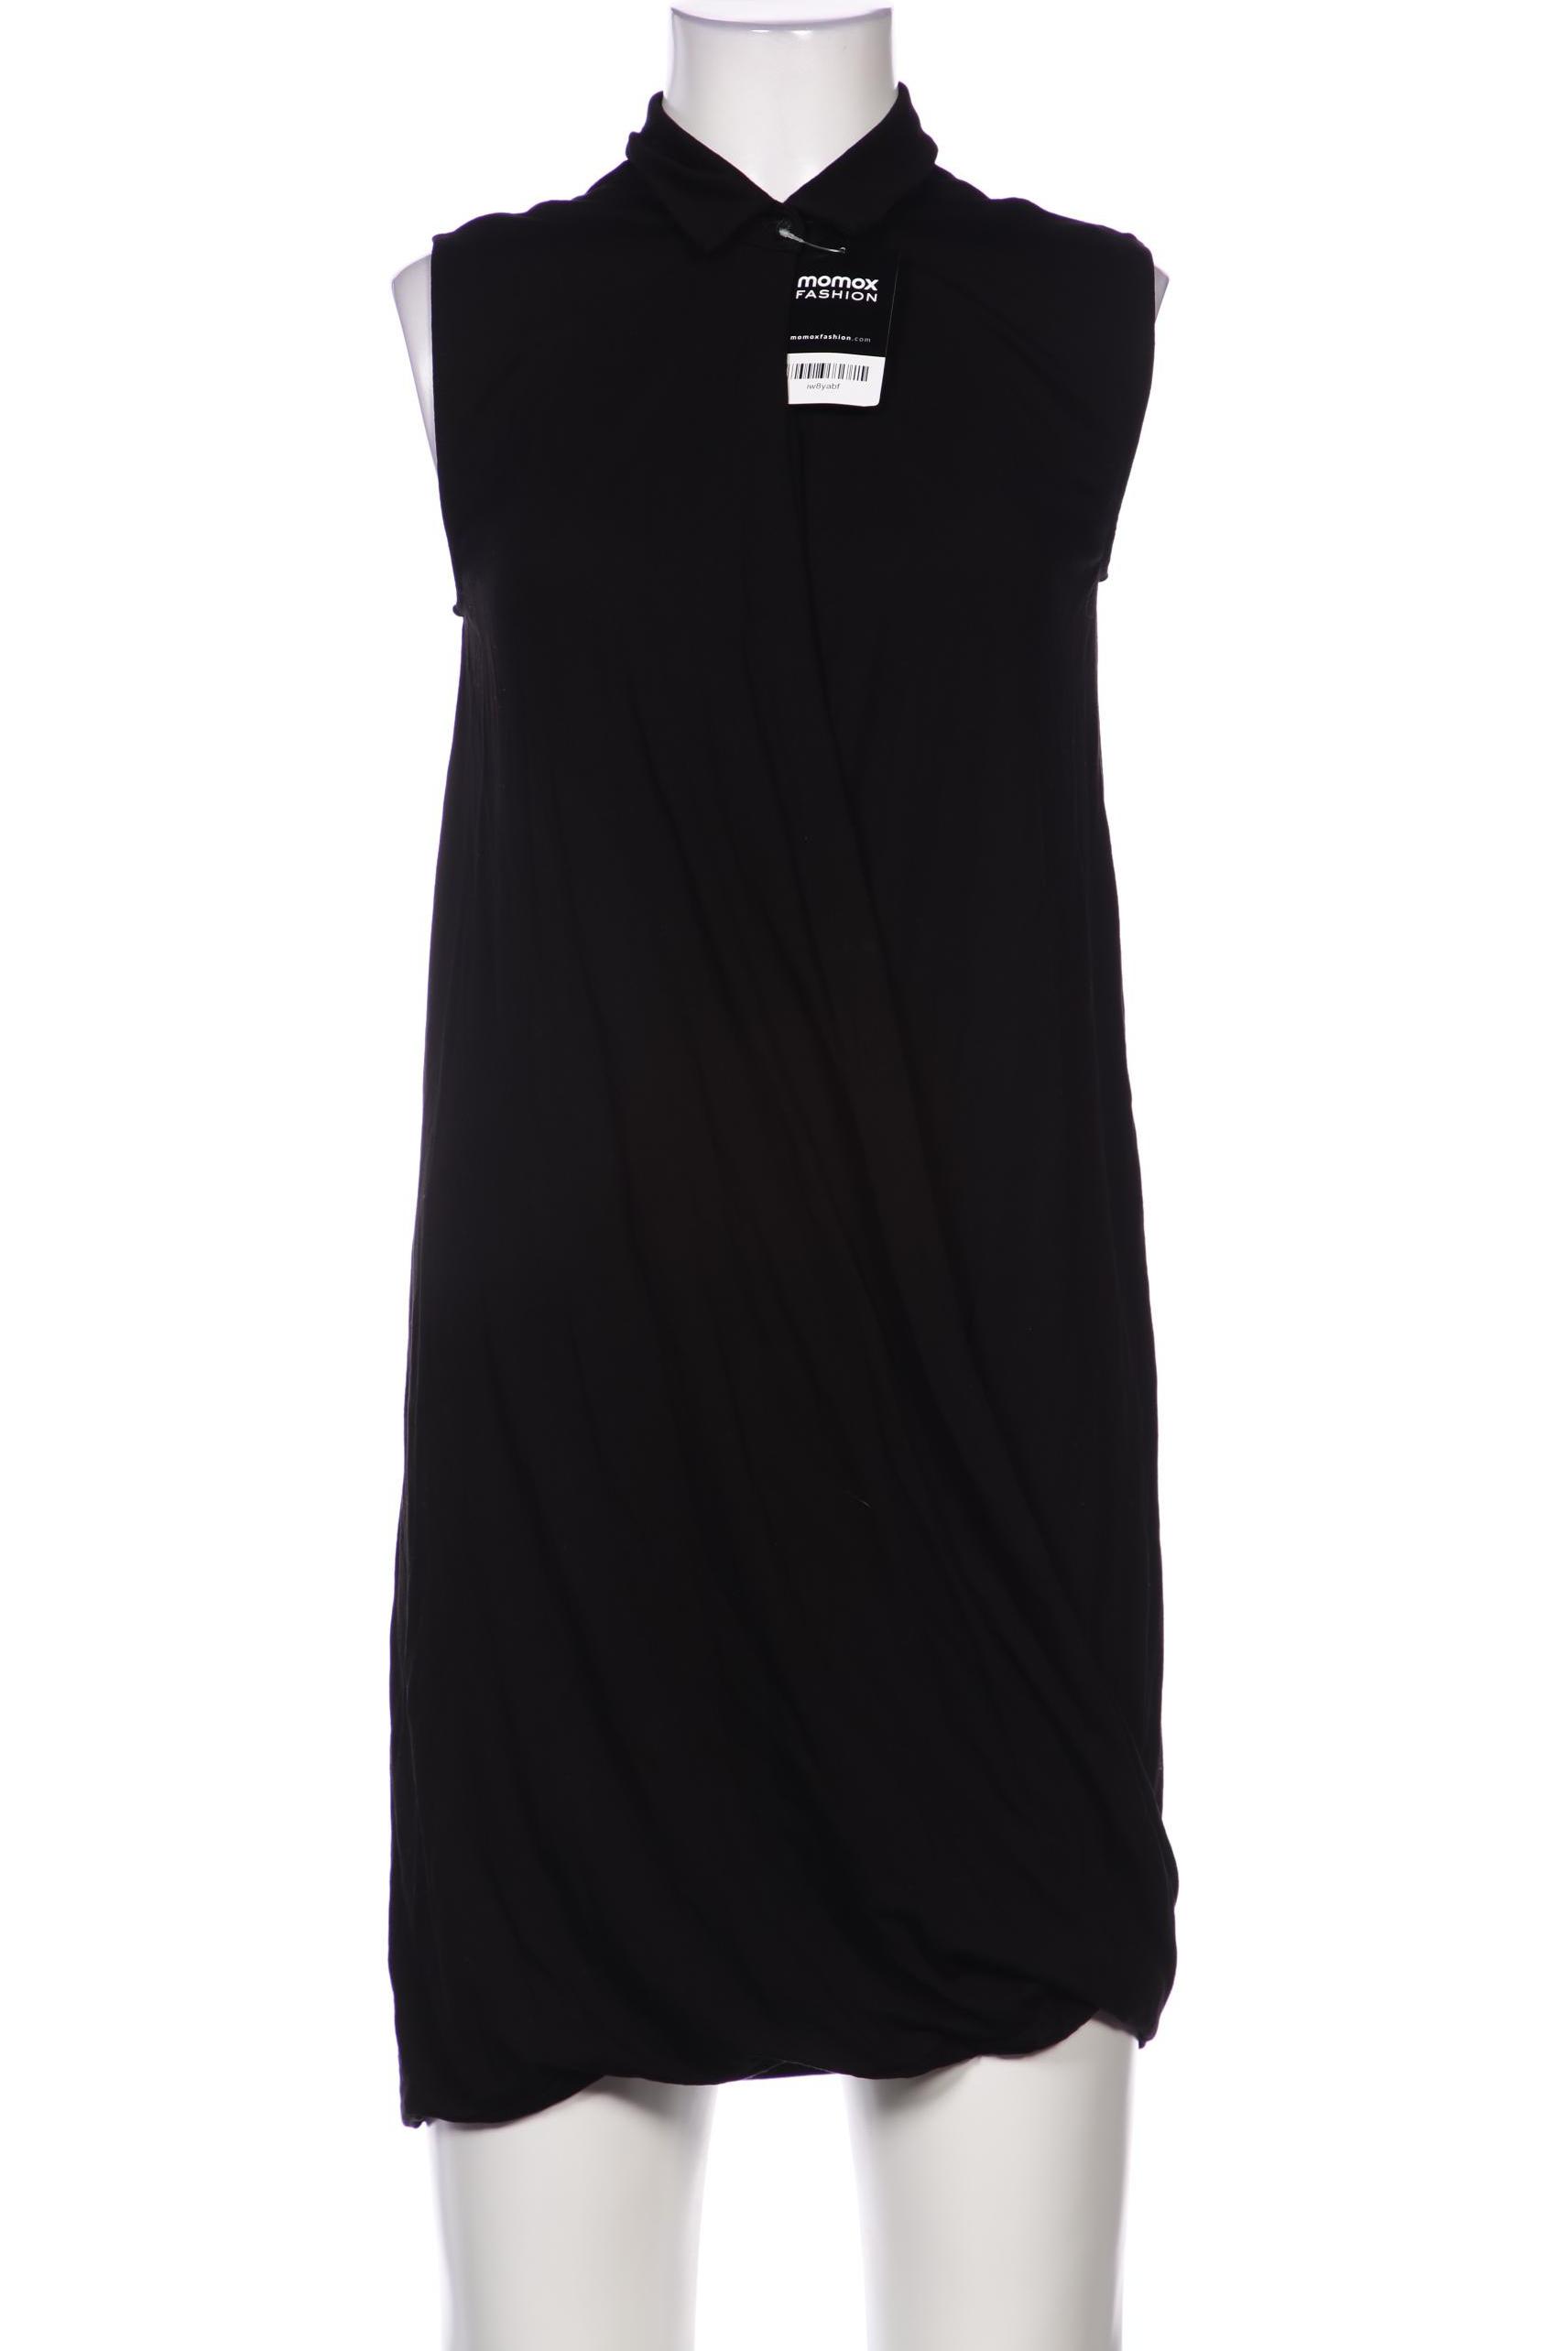 COS Damen Kleid, schwarz, Gr. 34 von COS